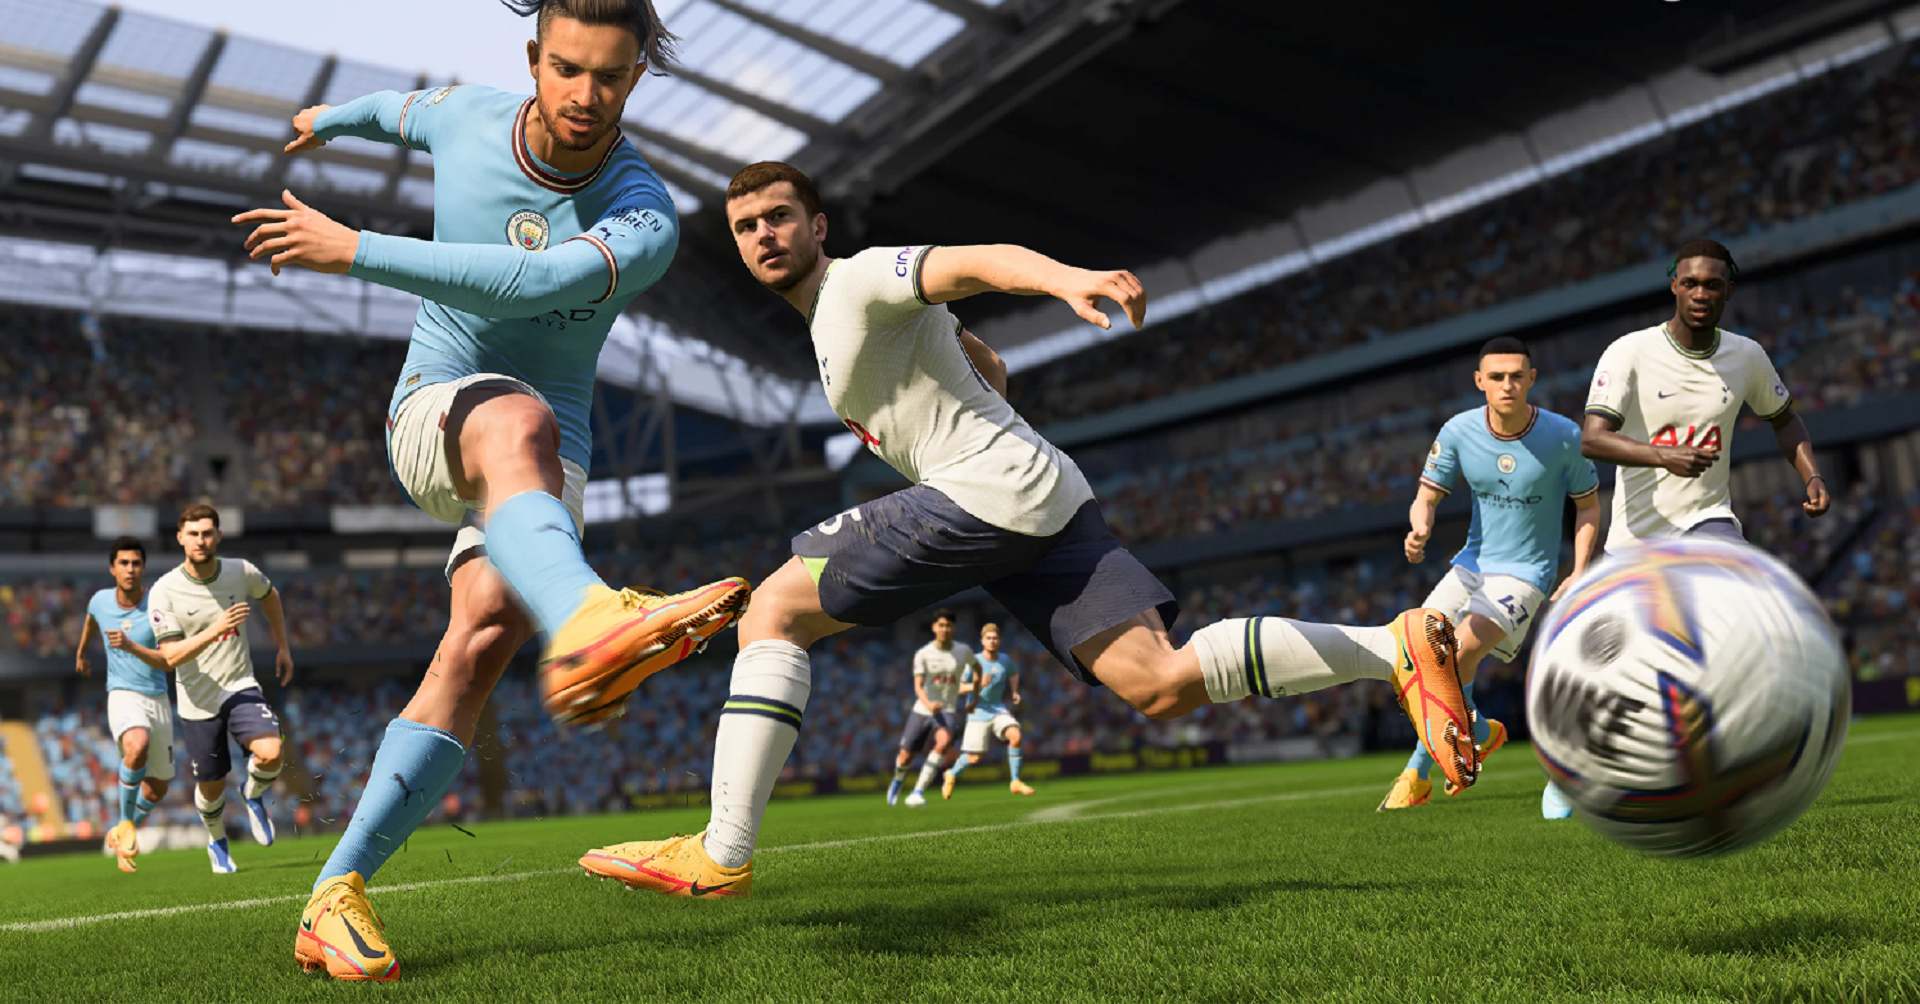 EA представила топ-23 лучших игрока в FIFA 23 — Мбаппе и Месси в топ-5